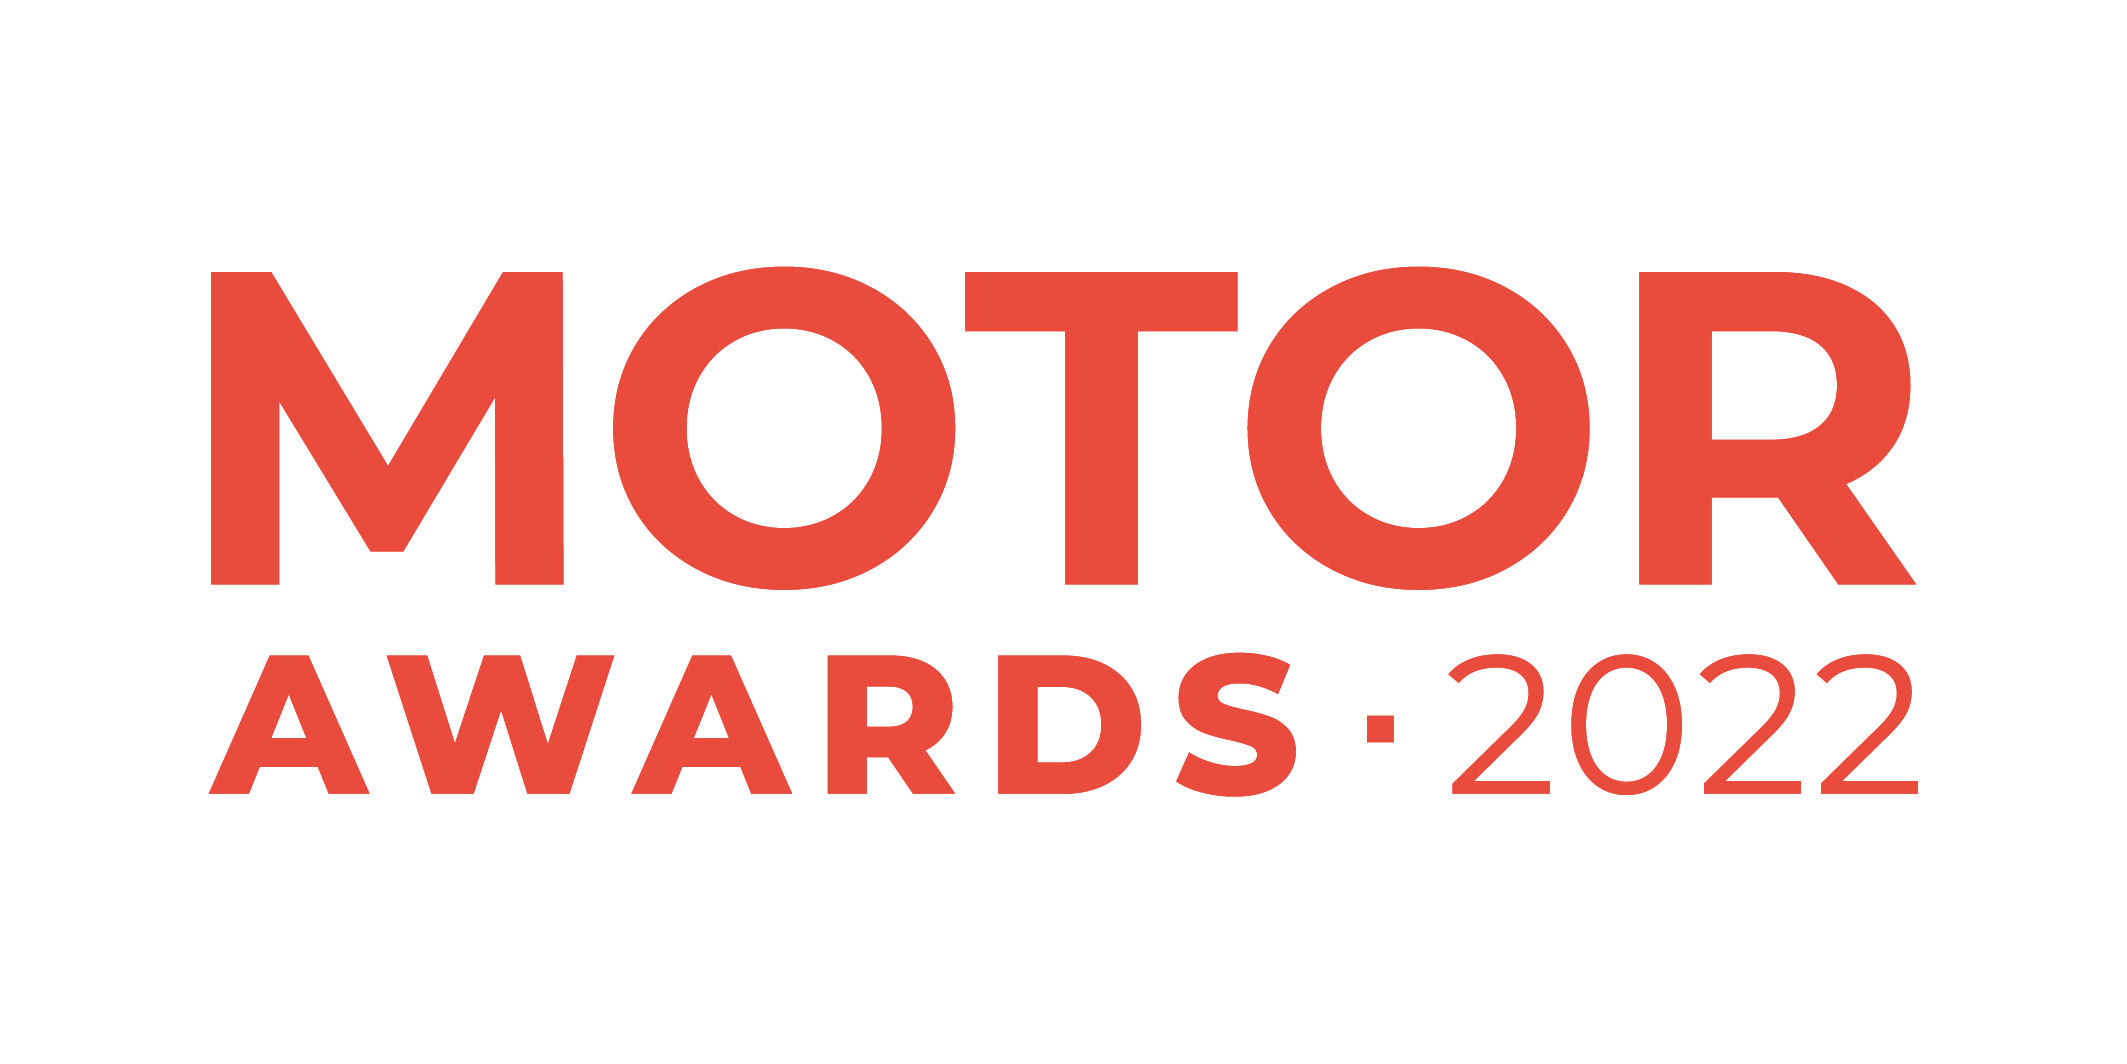 Motor Awards 2022